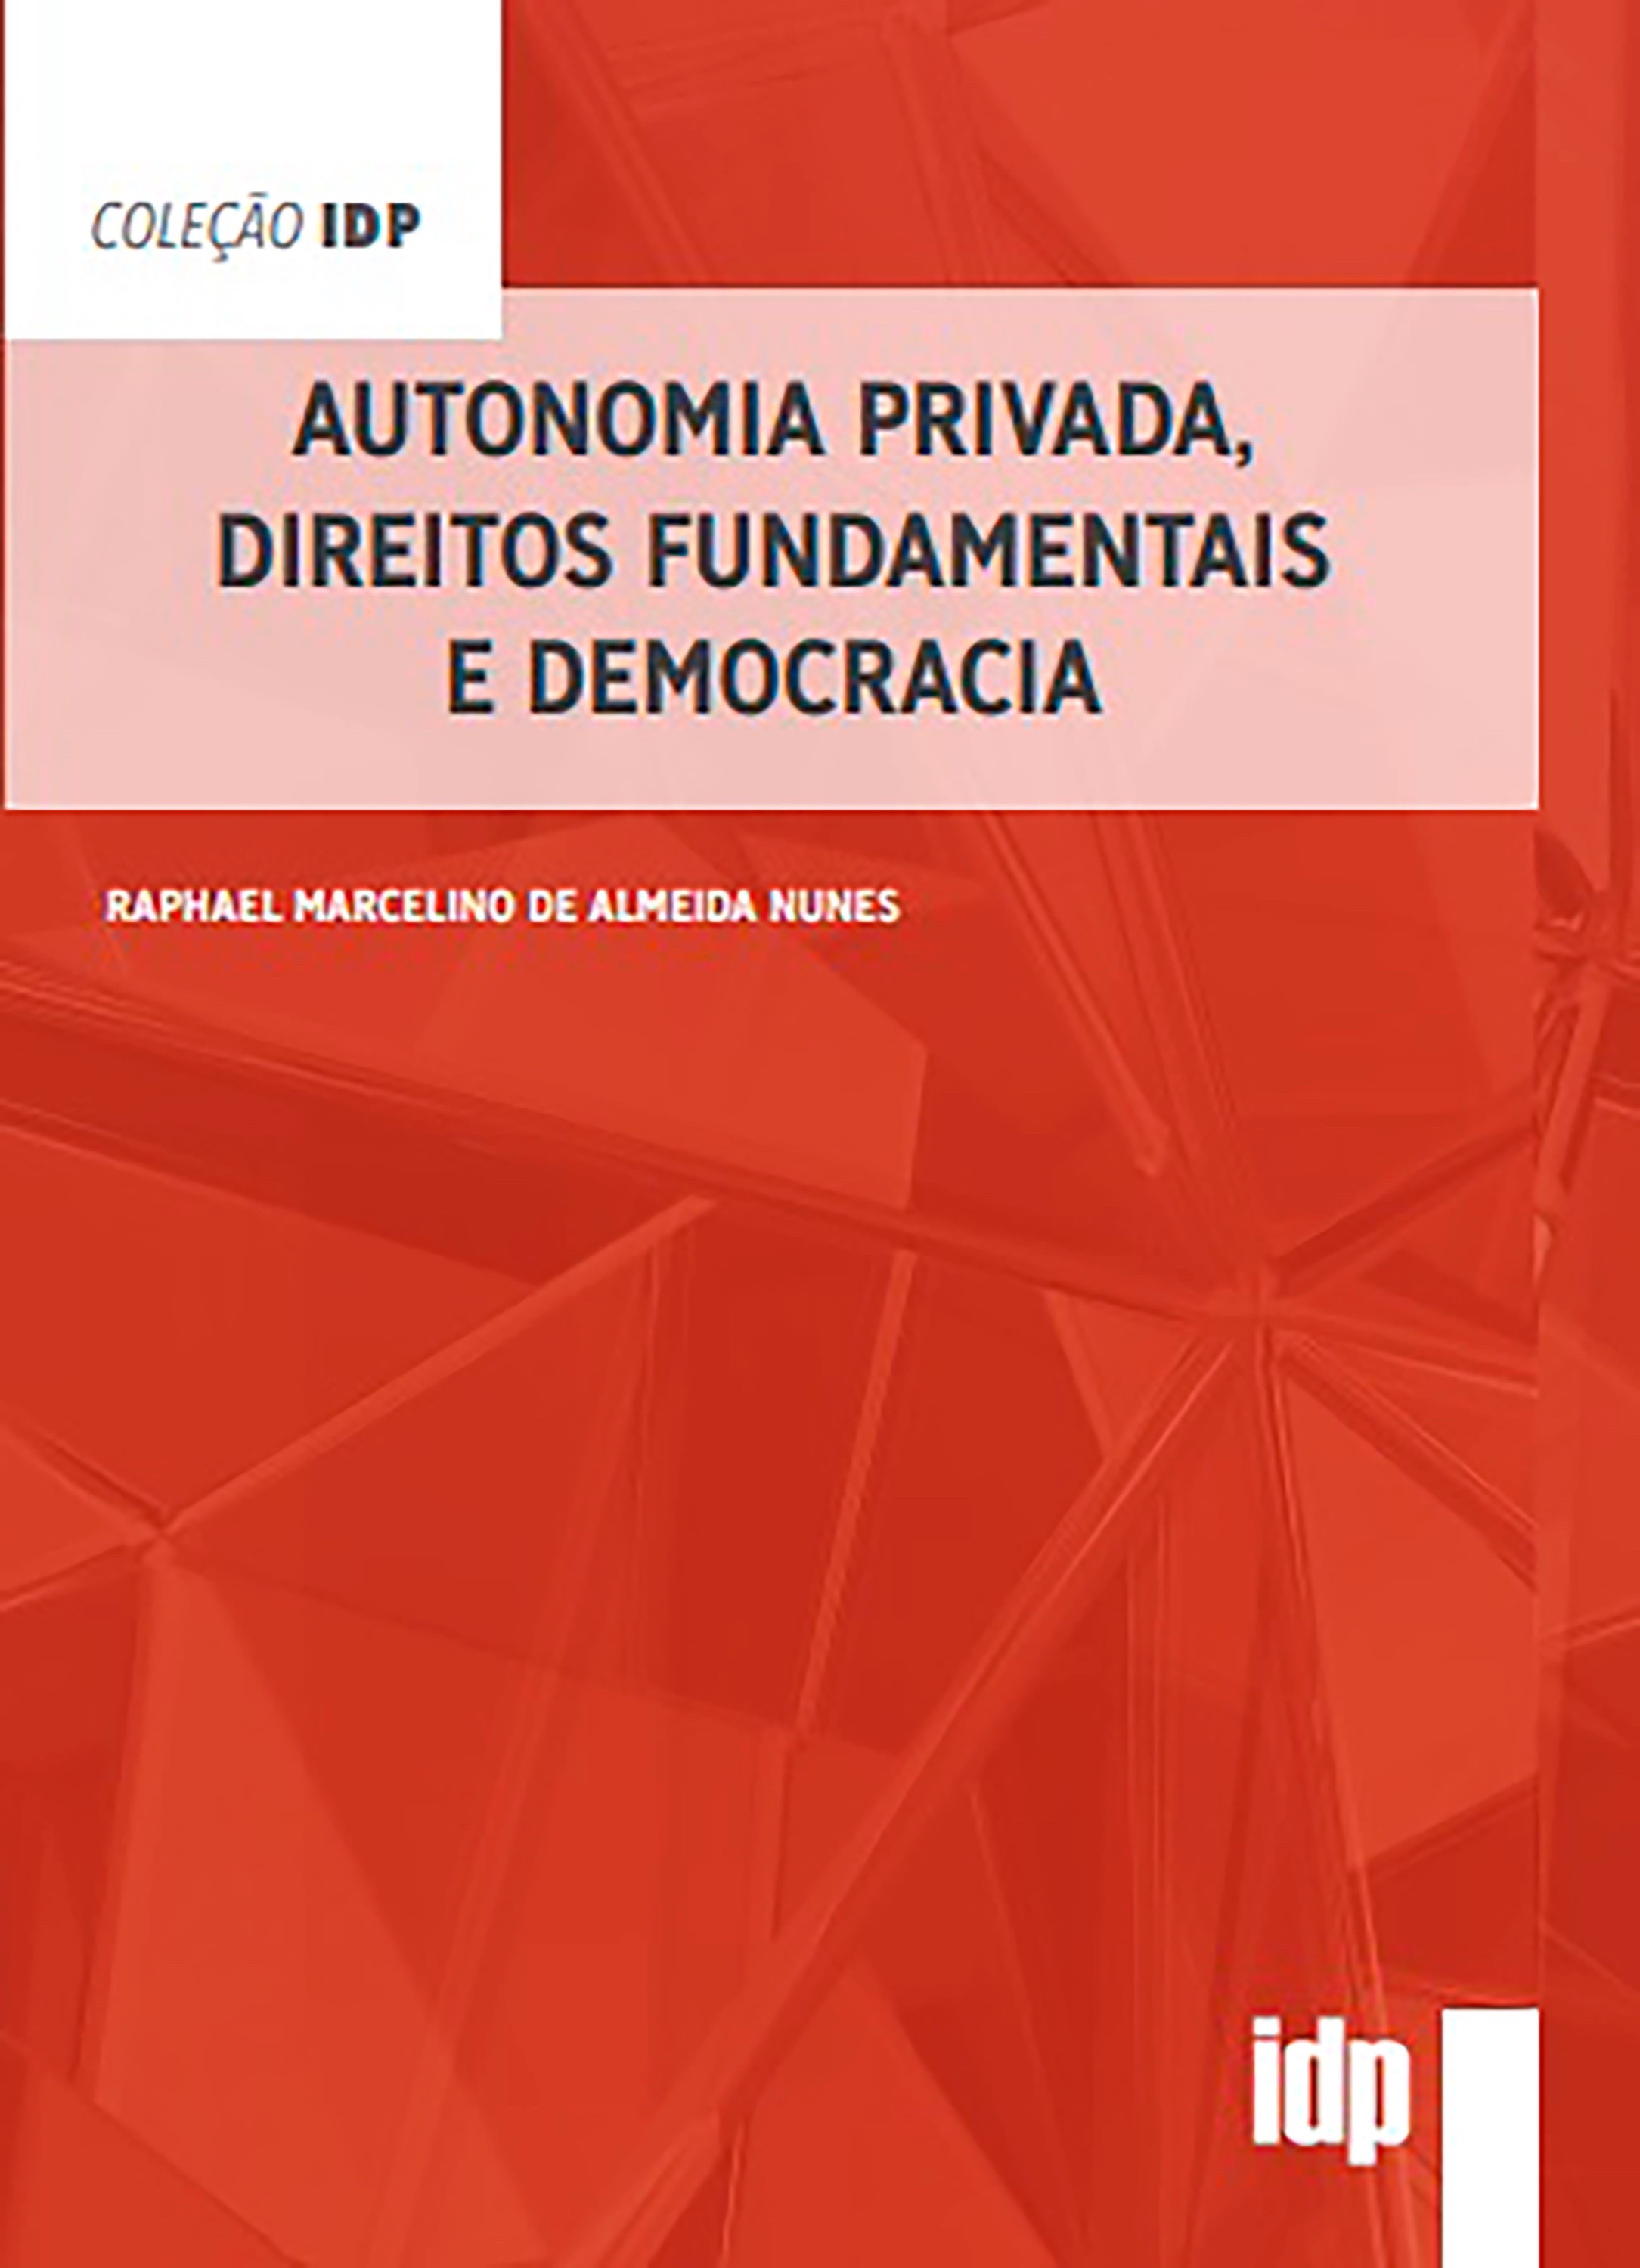 Autonomia Privada, Direitos Fundamentais e Democracia